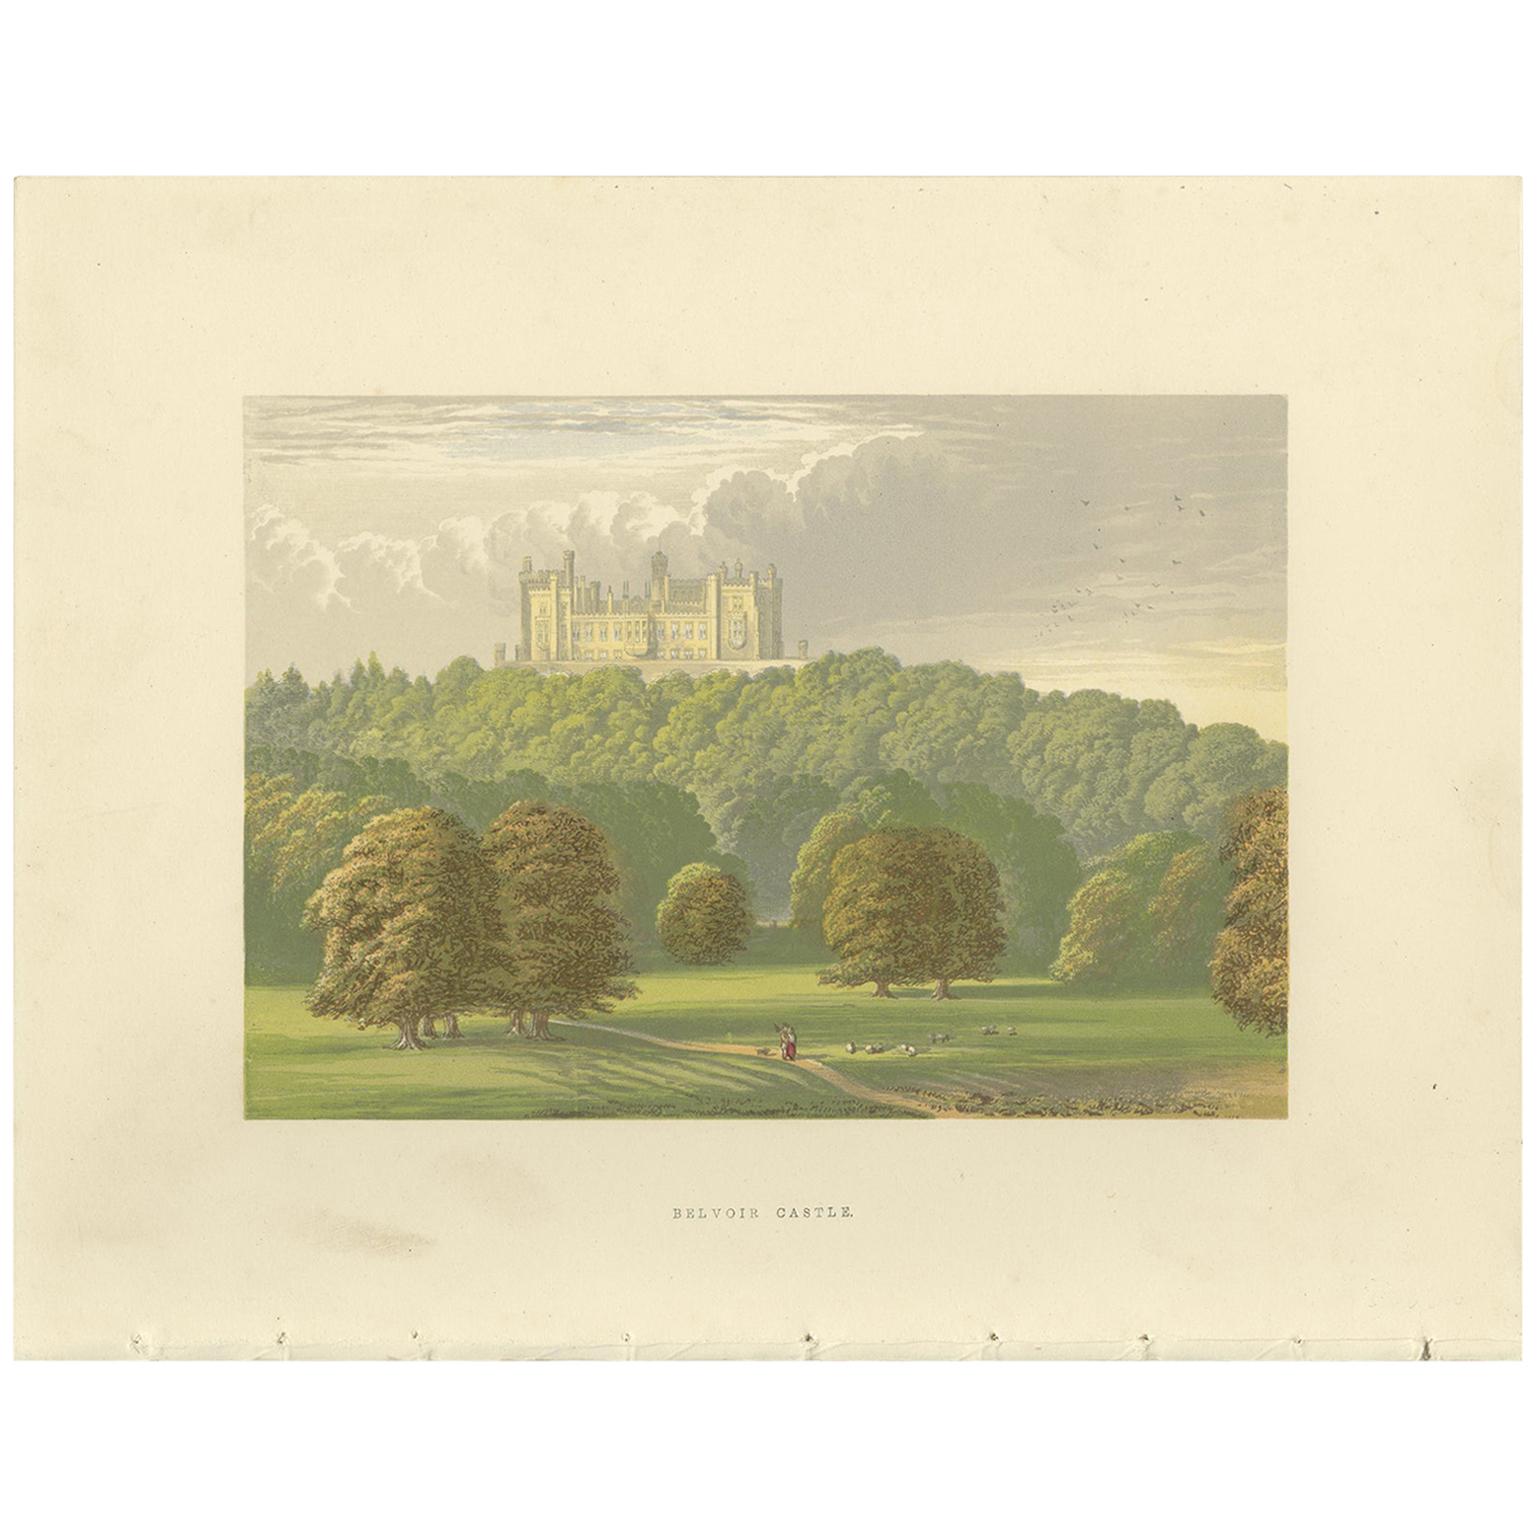 Antique Print of Belvoir Castle by Morris, circa 1880